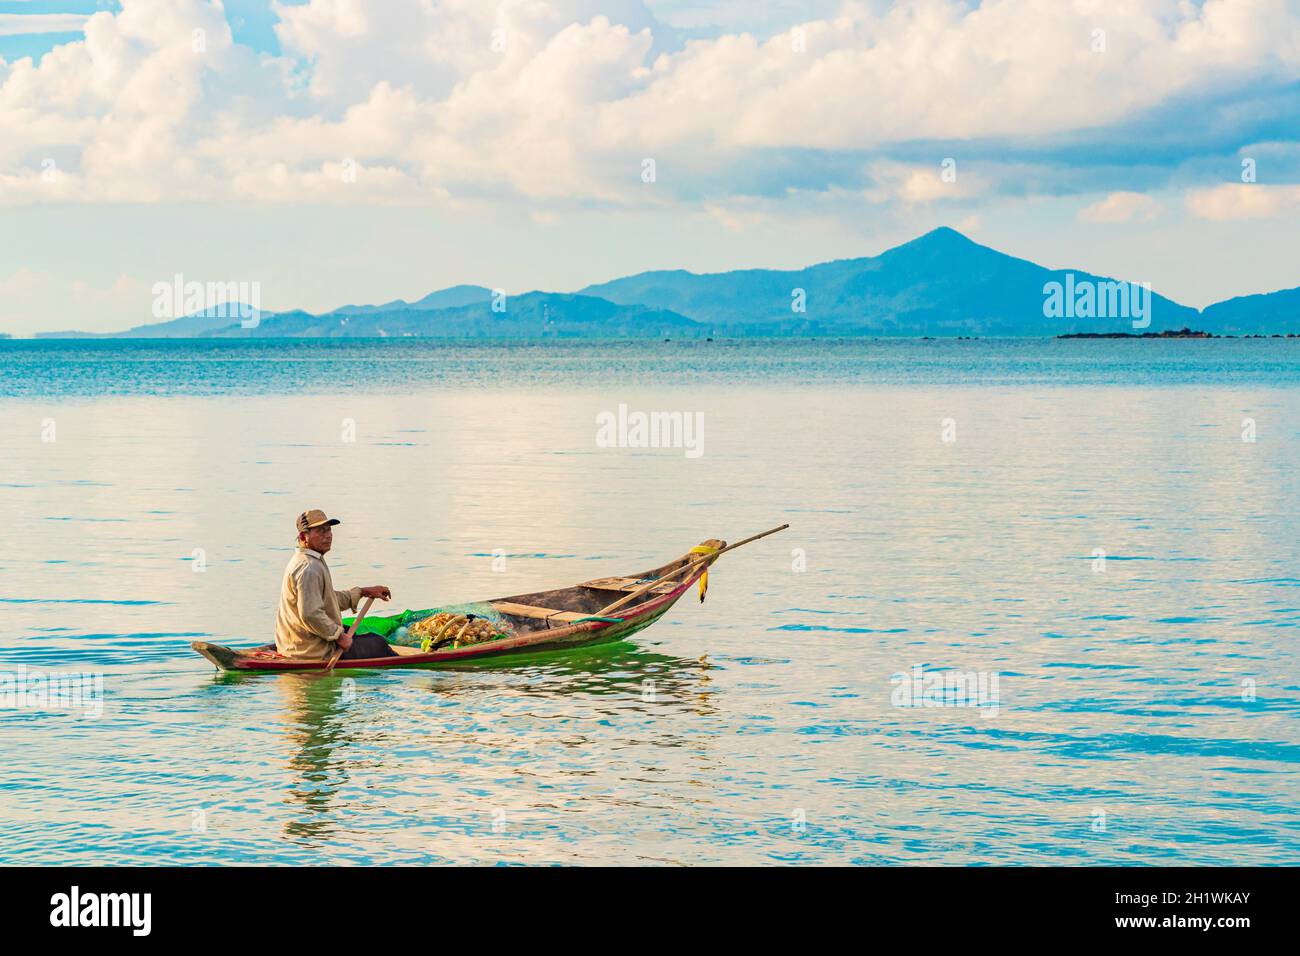 Surat Thani Thailand 25. Mai 2018 Fischer mit Boot und Koh Pha-ngan Landschaftspanorama auf der Insel Koh Samui in Thailand. Stockfoto